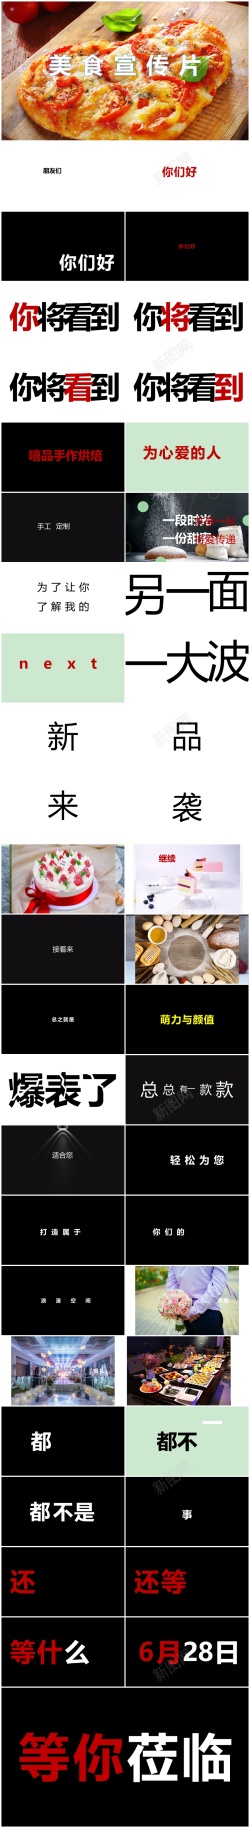 餐饮企业宣传片86酷炫快闪美食宣传片ppt模板